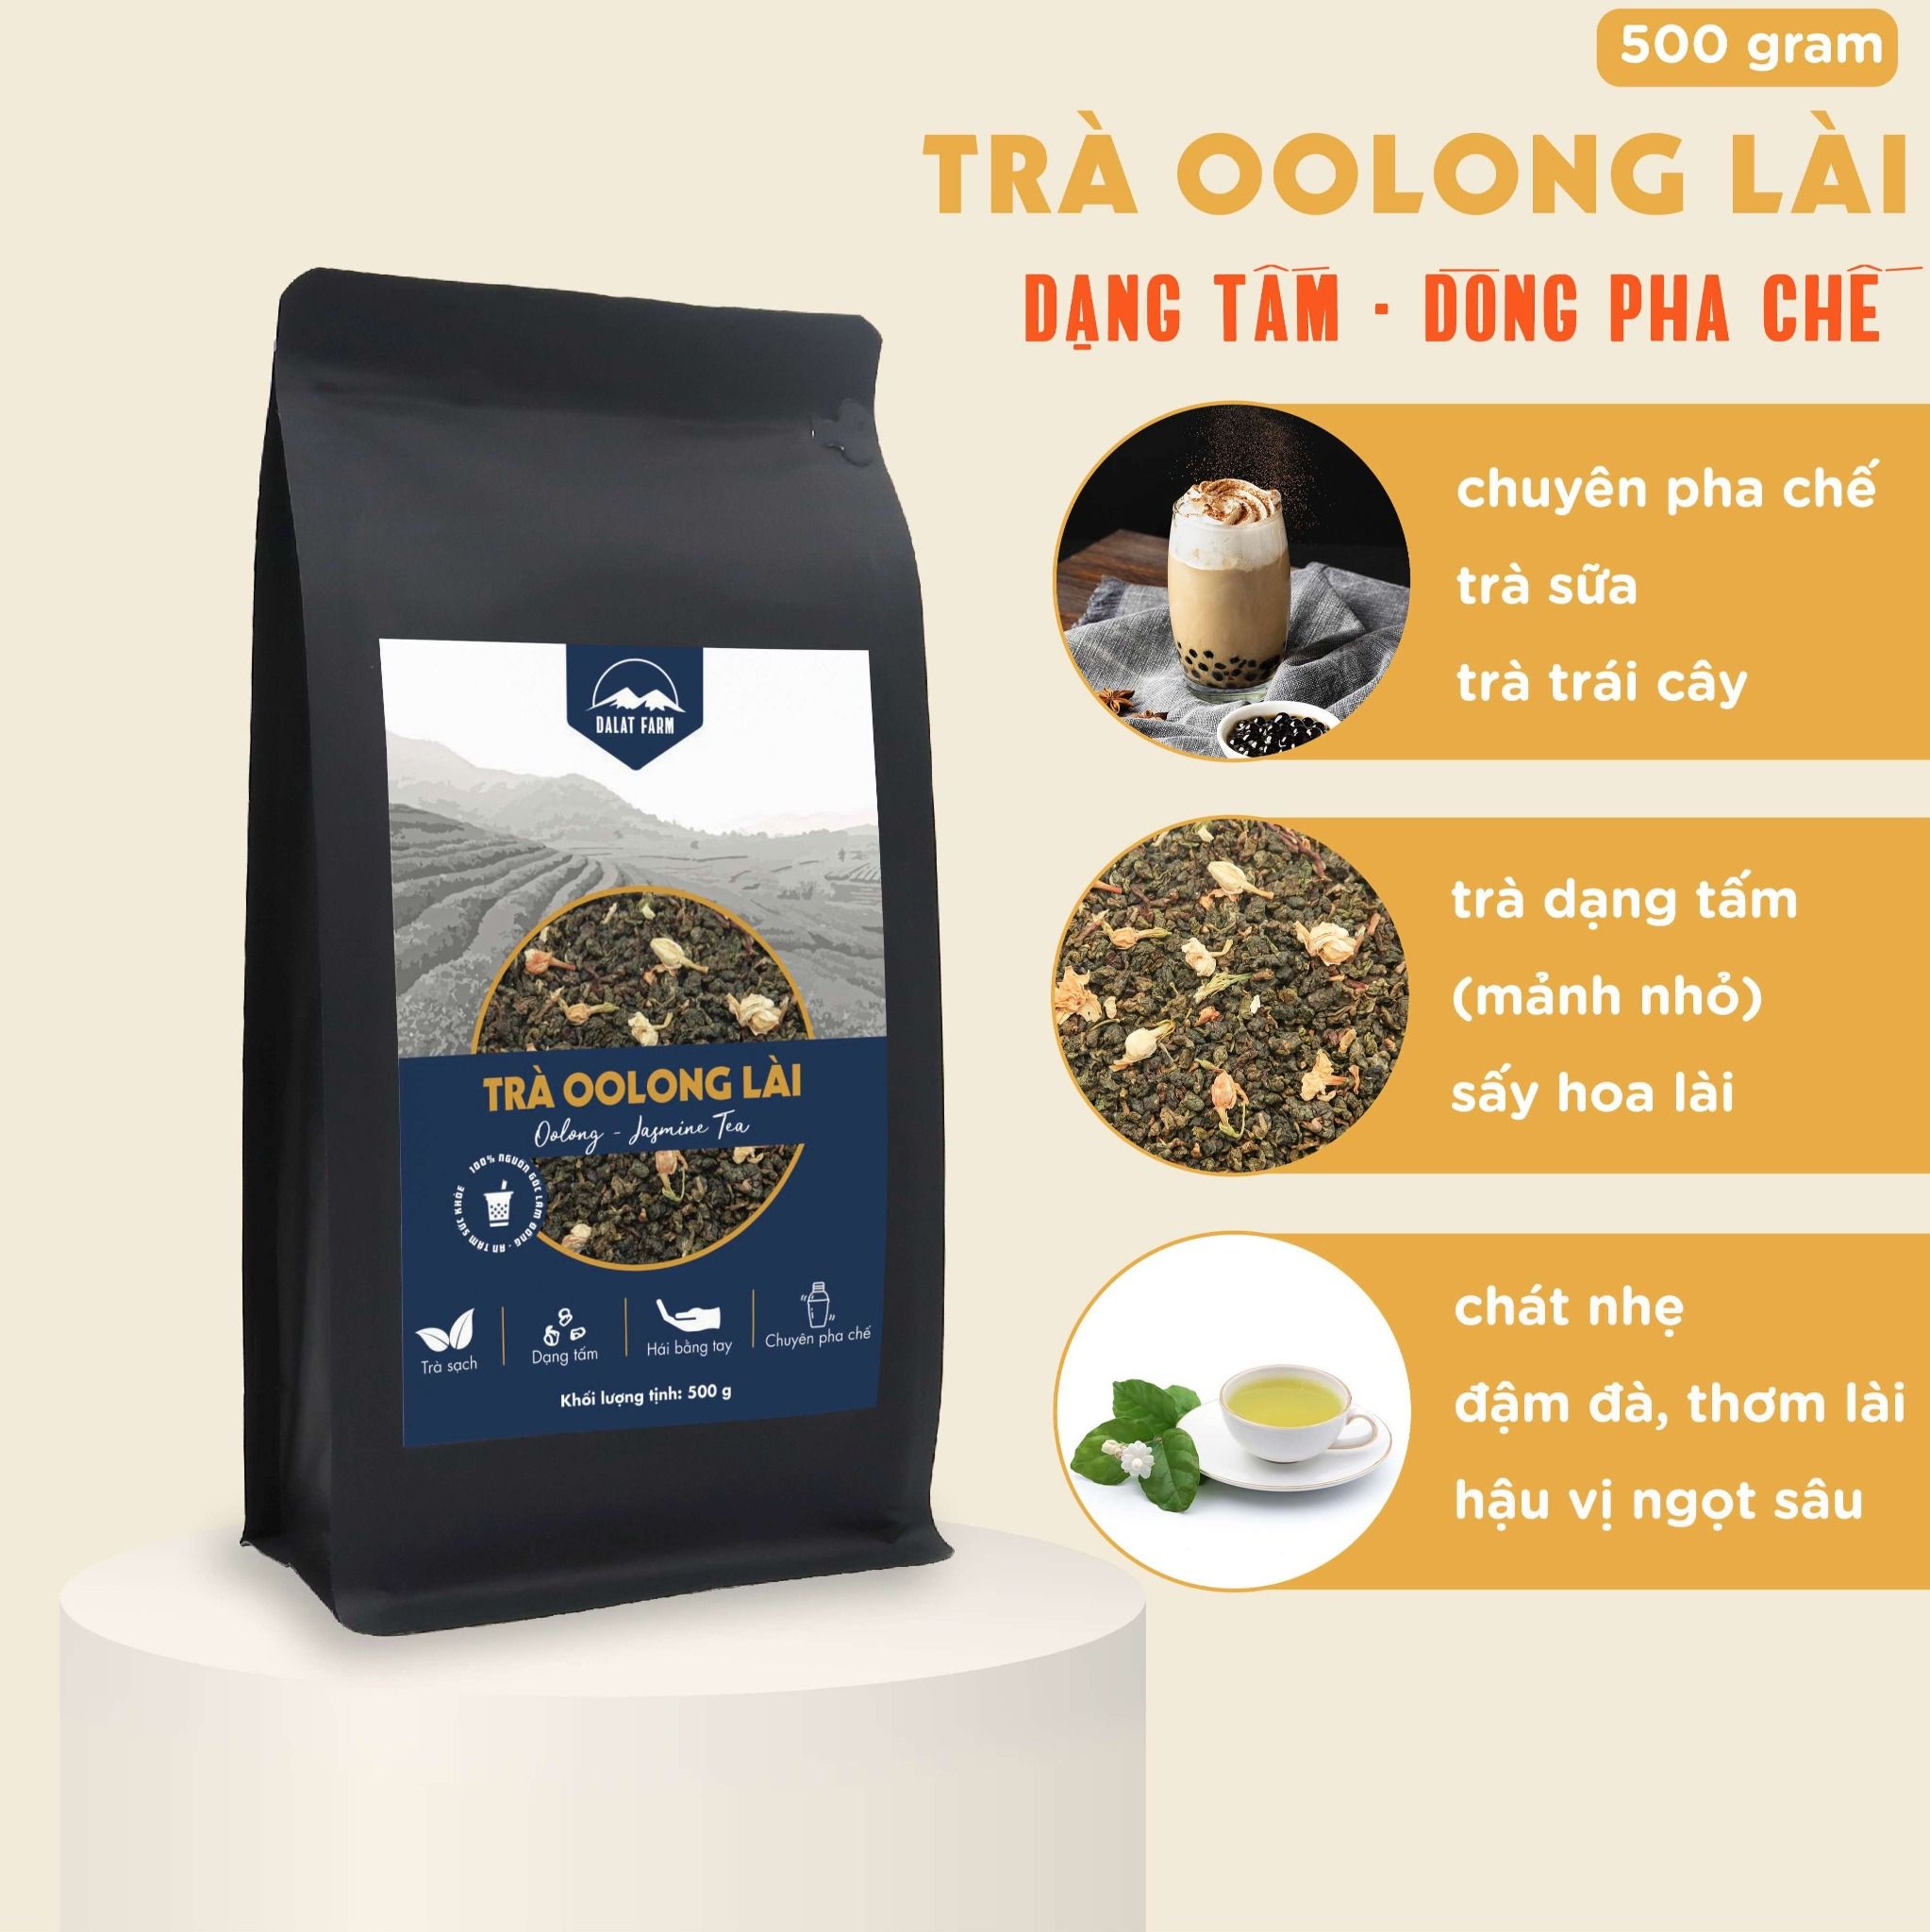  Trà Oolong Lài (dạng tấm) - Túi 500 g 